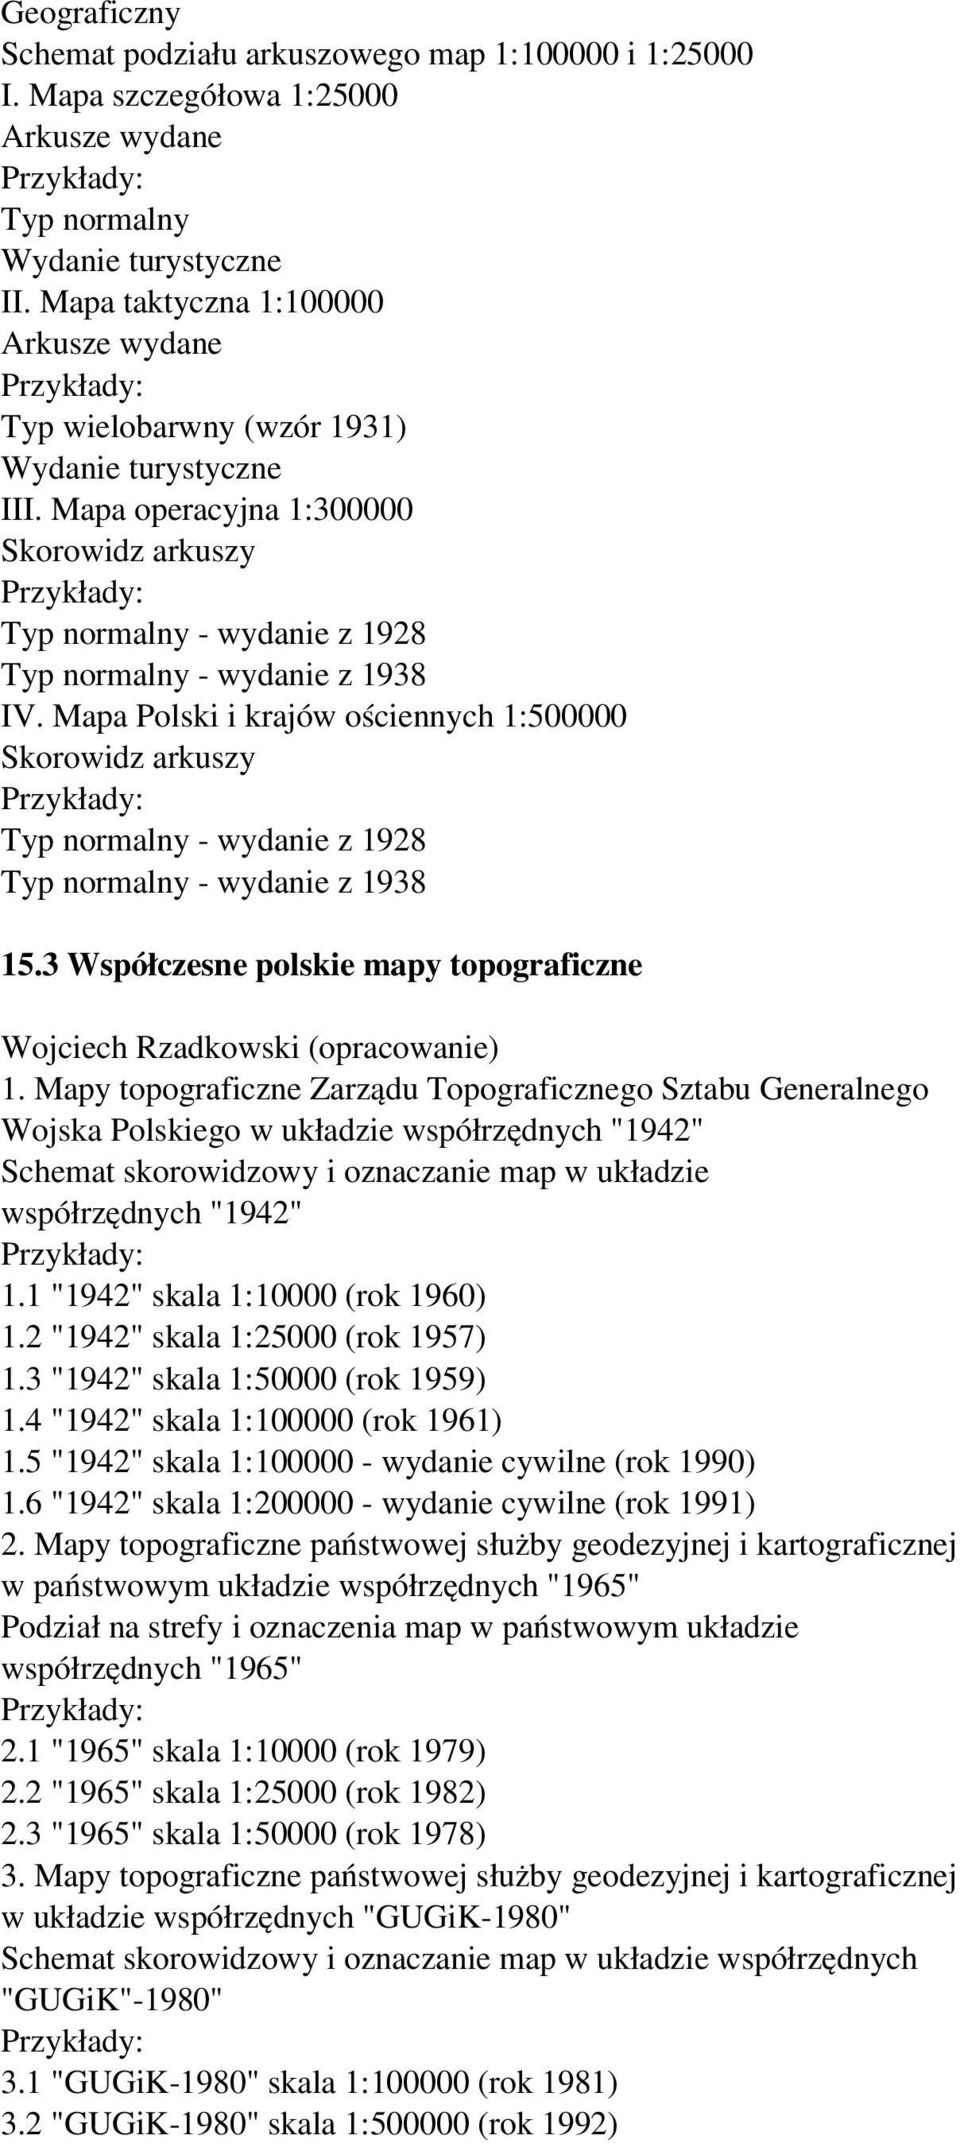 Mapa Polski i krajów ościennych 1:500000 Typ normalny - wydanie z 1928 Typ normalny - wydanie z 1938 15.3 Współczesne polskie mapy topograficzne Wojciech Rzadkowski (opracowanie) 1.